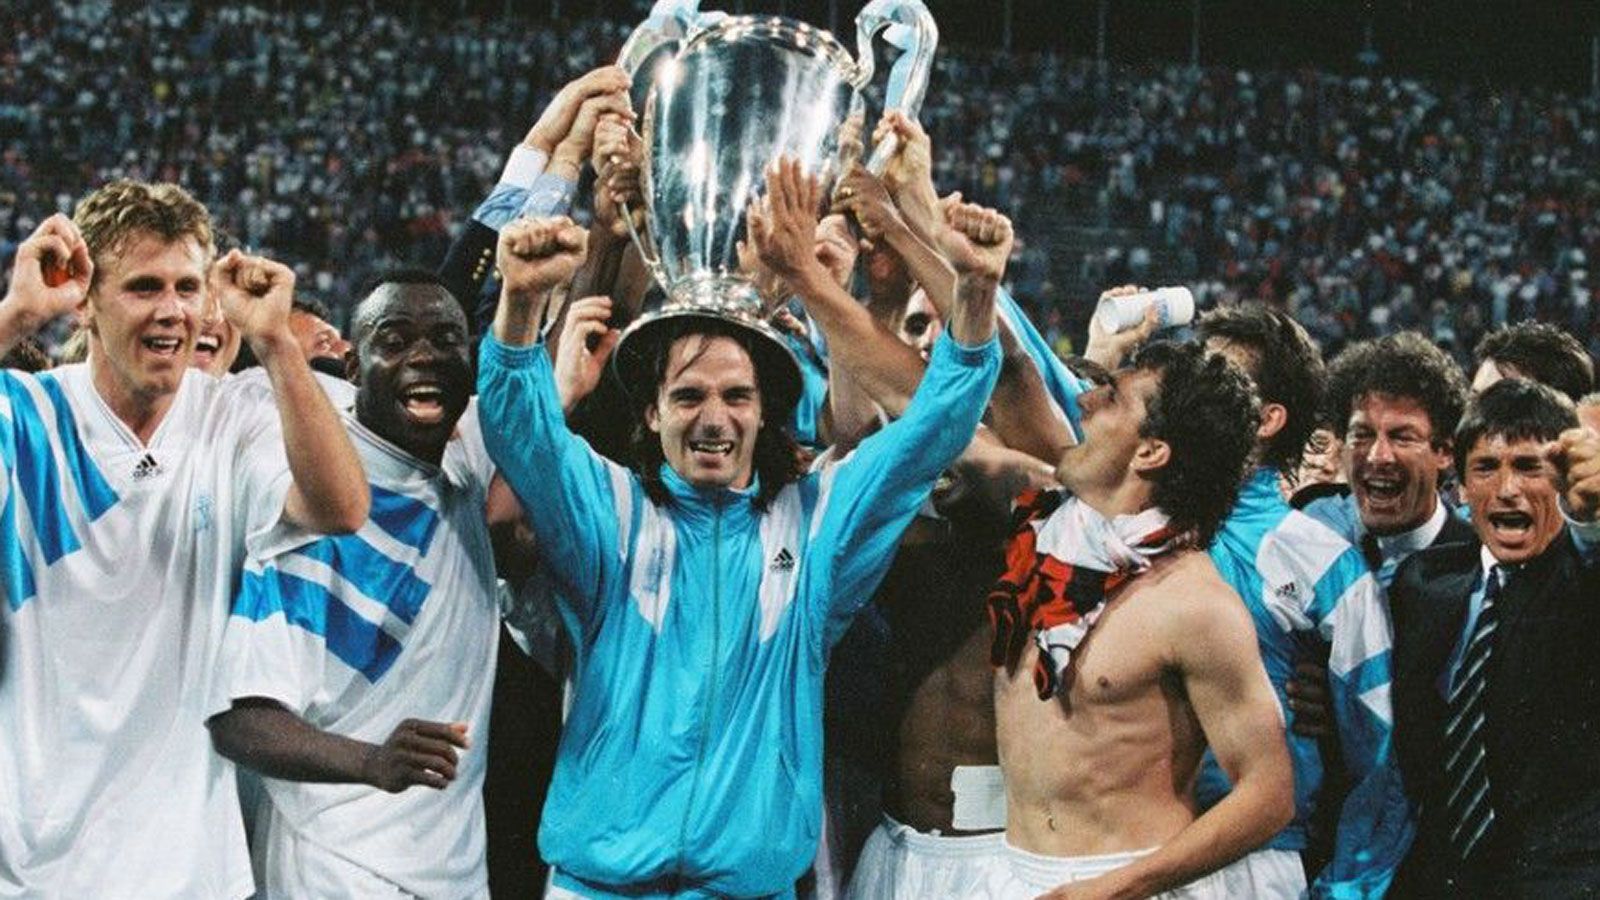 
                <strong>Erster und einziger französischer CL-Sieger: Olympique Marseille 1992/93</strong><br>
                Nach der Niederlage gegen Belgrad überlässt Marseille nichts dem Zufall und steigt durch die Verpflichtungen von Rudi Völler, Fabien Barthez und Marcel Desailly zum "Superklub" auf. Somit ist auch der Einzug in das erste Finale der neuen Champions League, die den Europapokal der Landesmeister ablöst, keine Überraschung. Im fünften Anlauf ist es dann endlich so weit: Marseille besiegt die AC Mailand im Münchner Olympiastadion mit 1:0 und setzt sich als erste französische Mannschaft die Krone des europäischen Vereinsfußballs auf. 
              